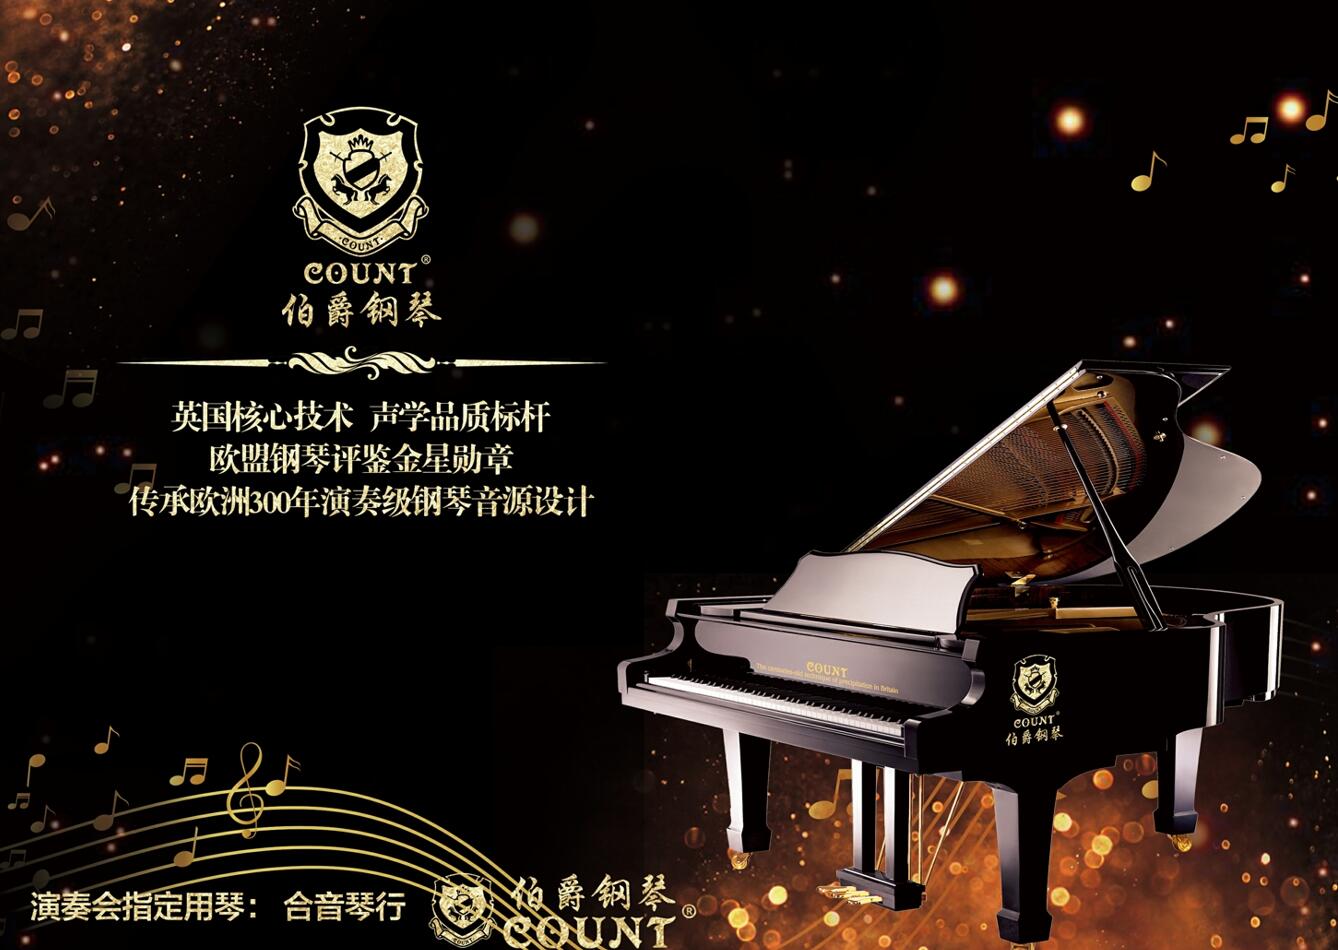 超越百年,伯爵钢琴的声誉得以继续表现并受到世界各地音乐家的欢迎.